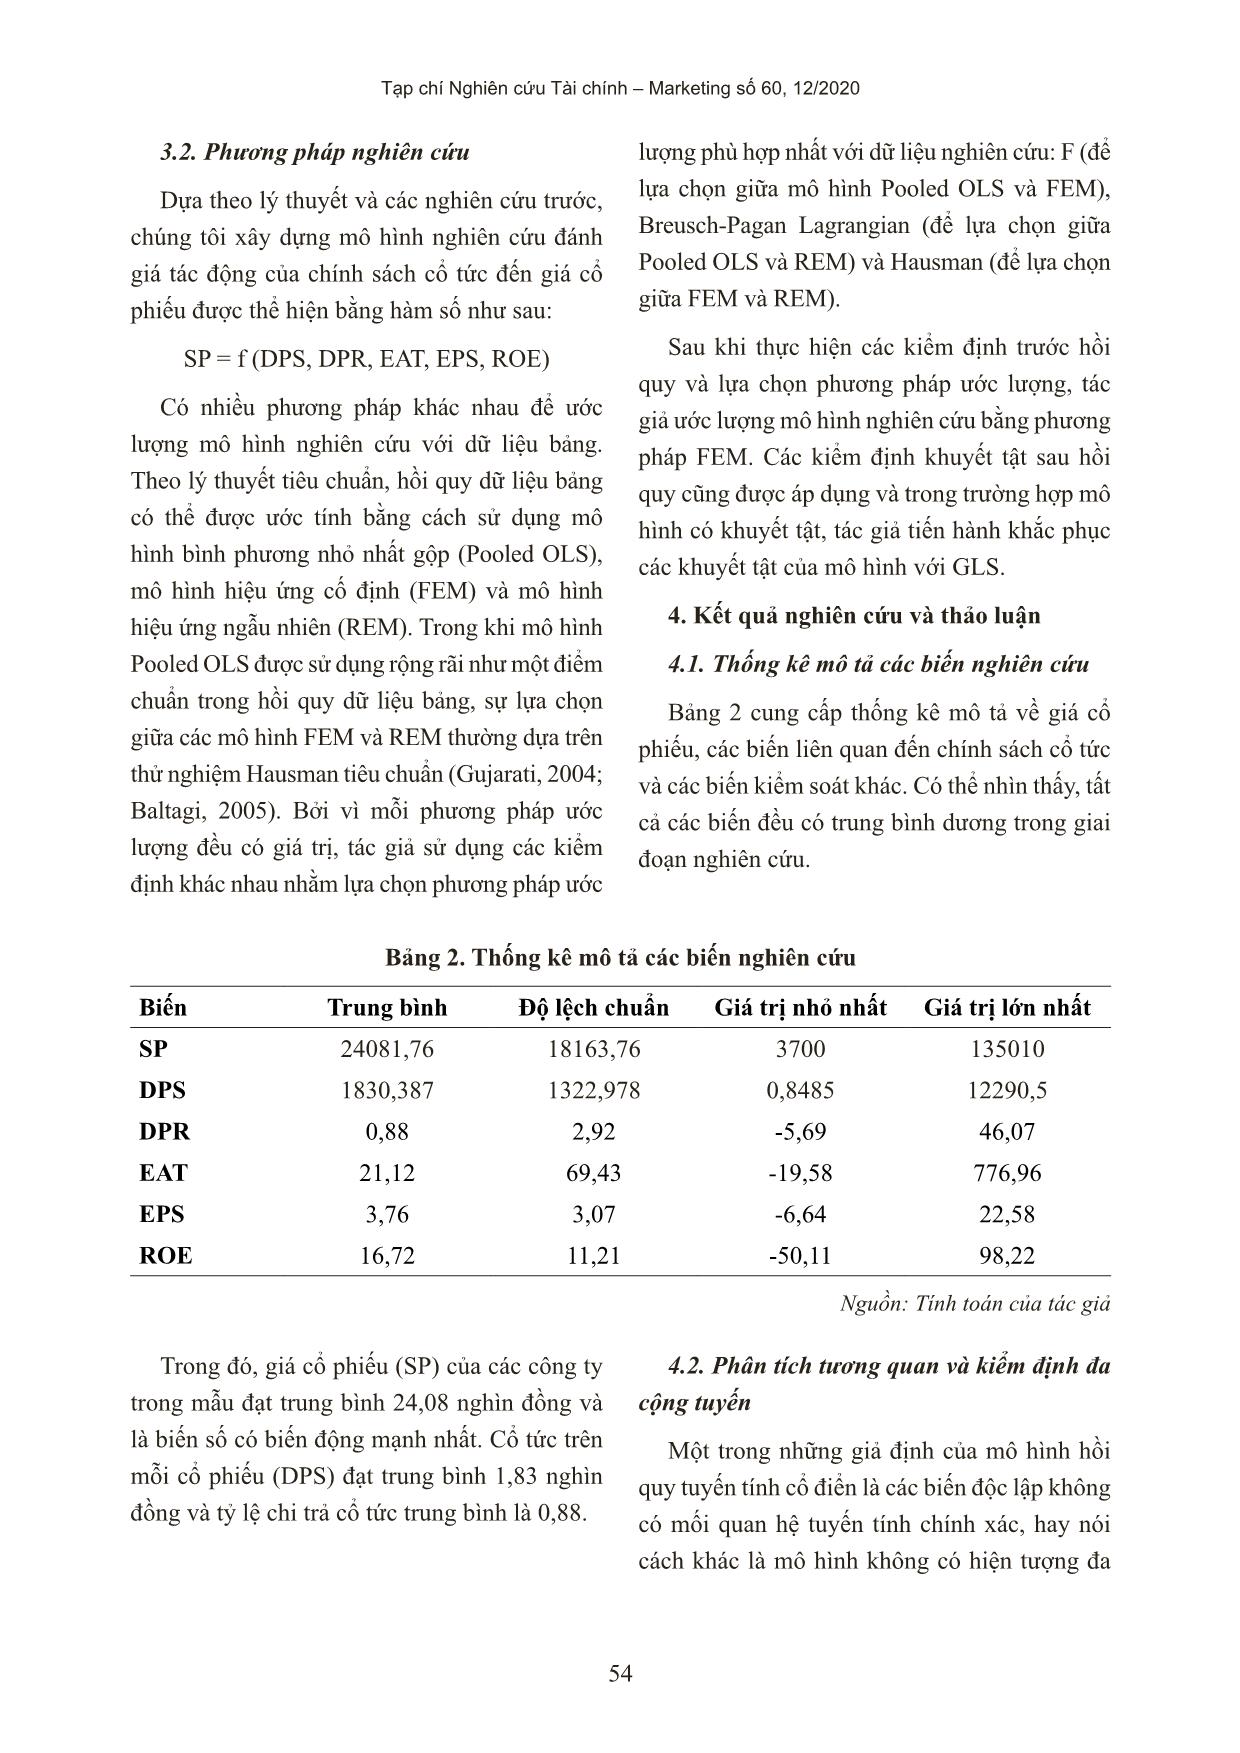 Ảnh hưởng của chính sách cổ tức đến giá cổ phiếu của các công ty niêm yết trên thị trường chứng khoán Việt Nam trang 9